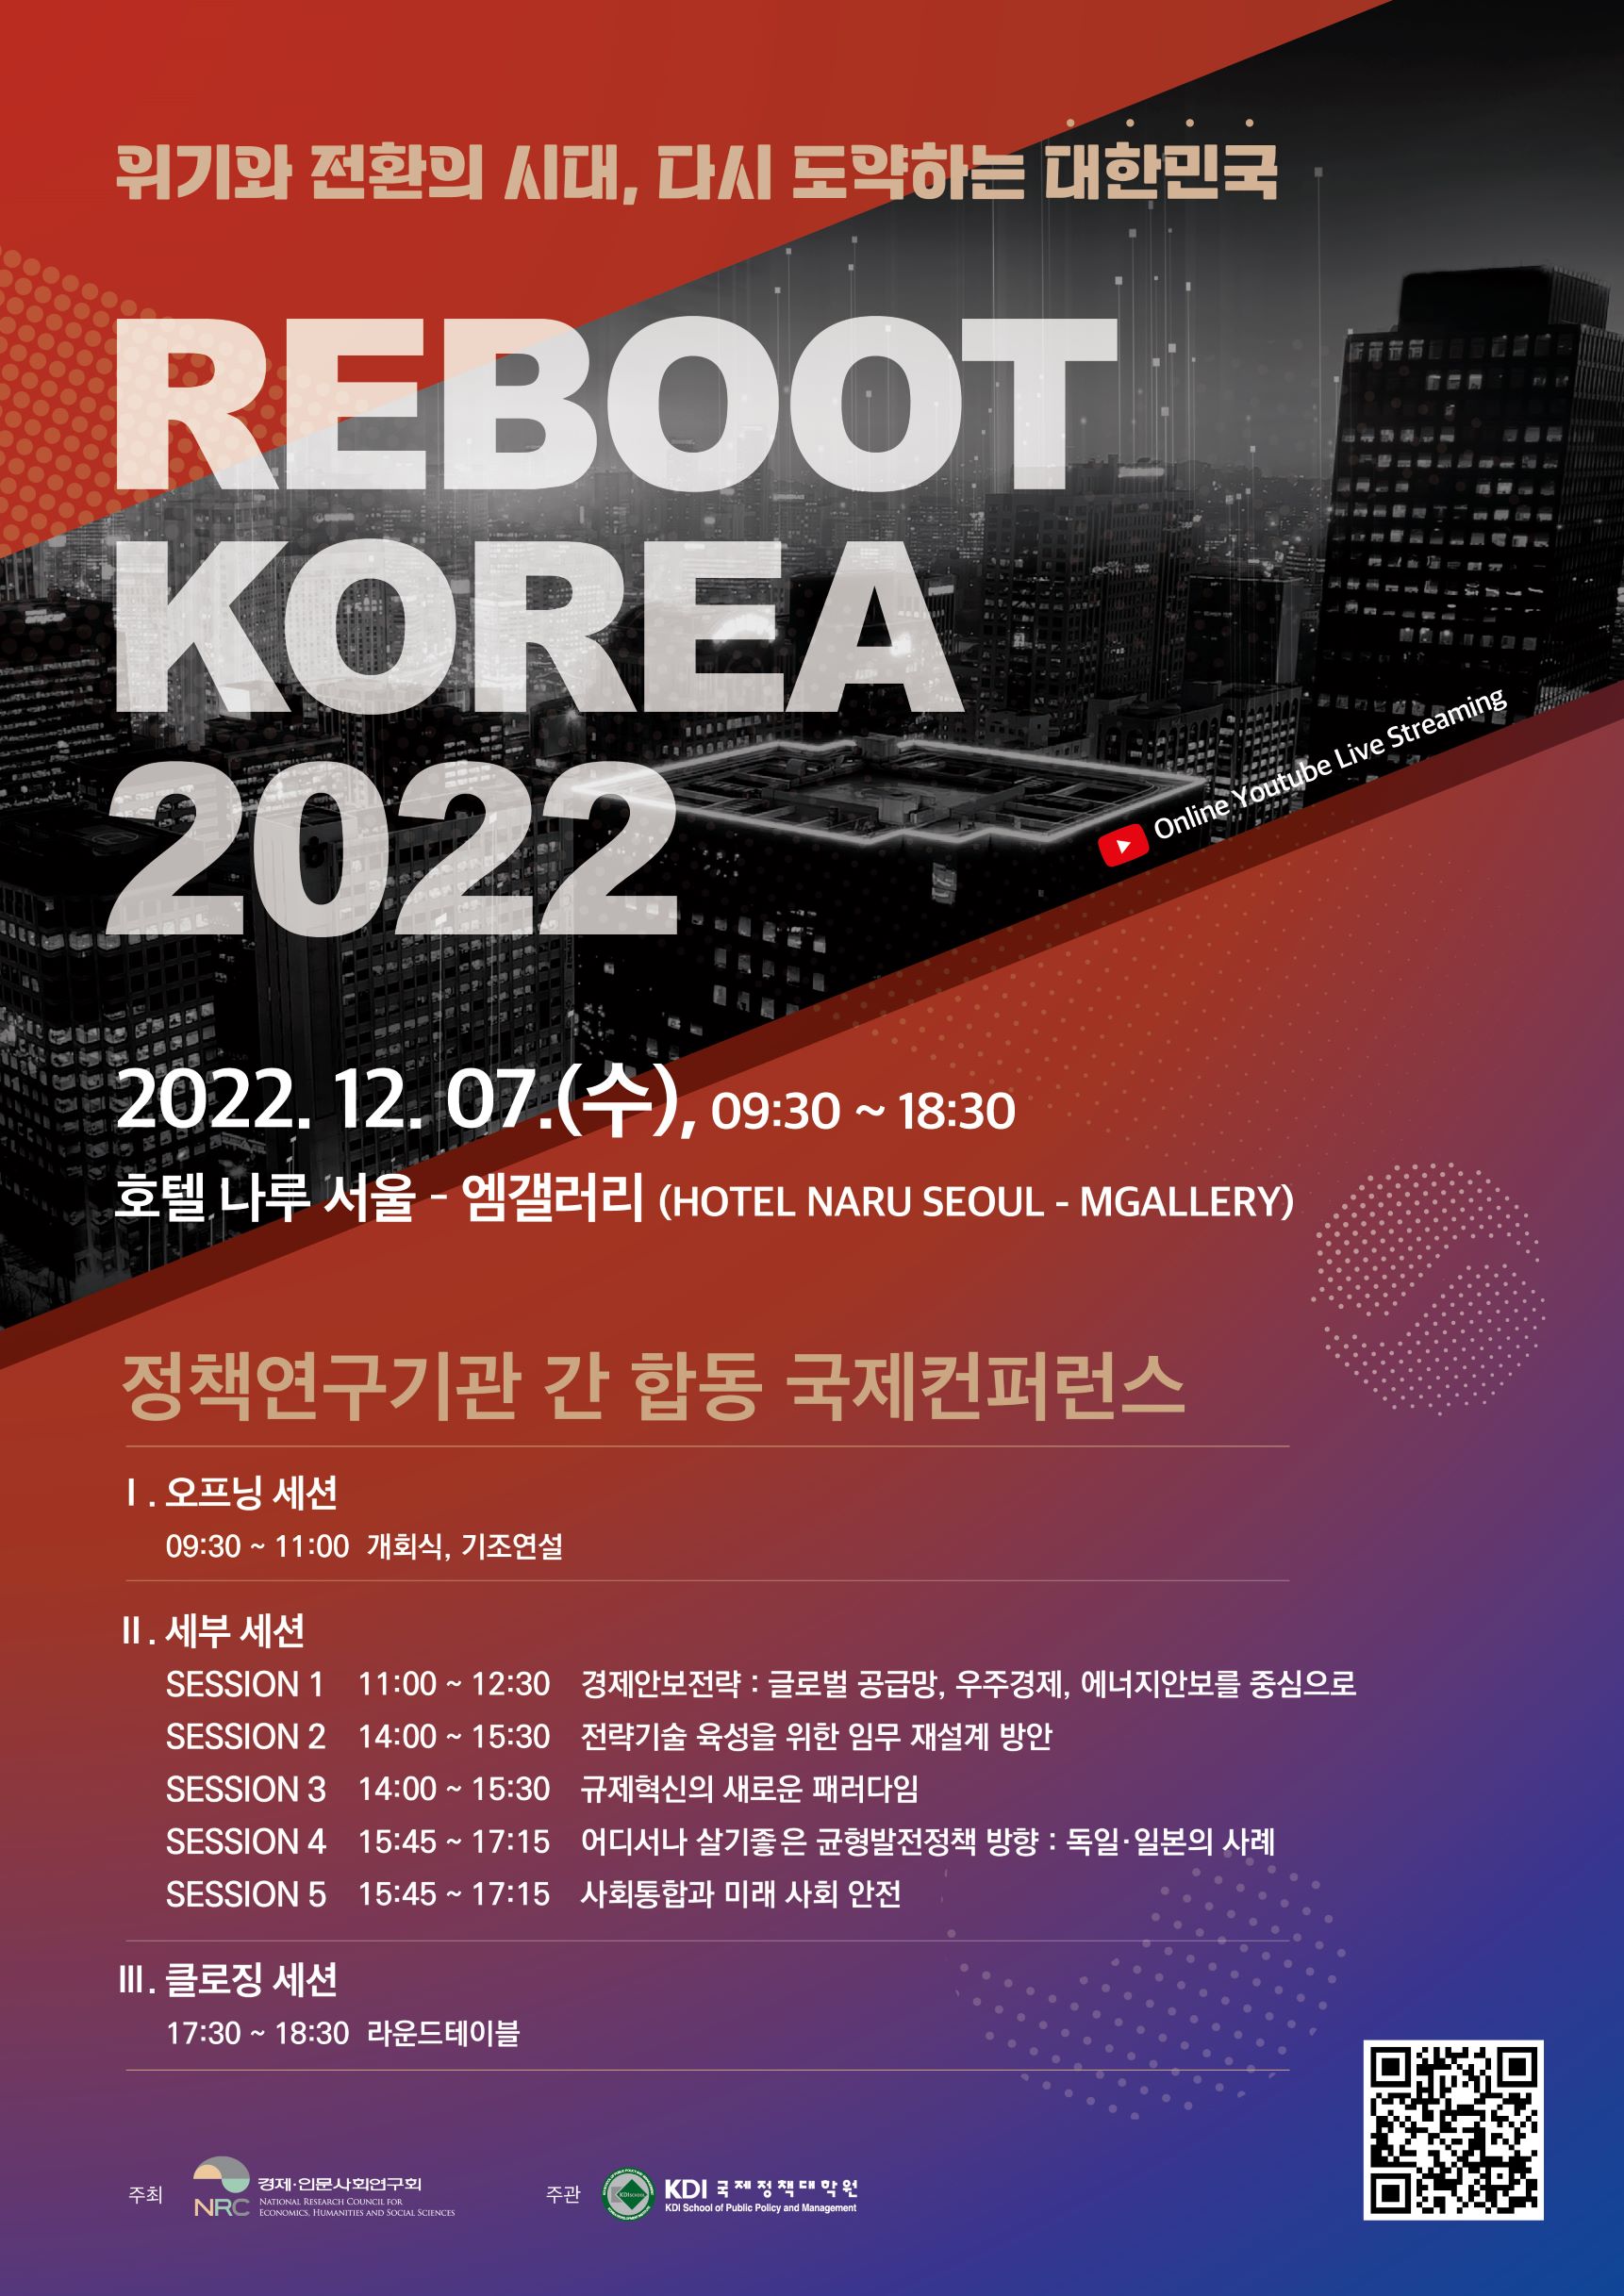 정책연구기관 간 합동 국제컨퍼런스 : Reboot Korea 2022 자세한 사항은 하단 내용 참조